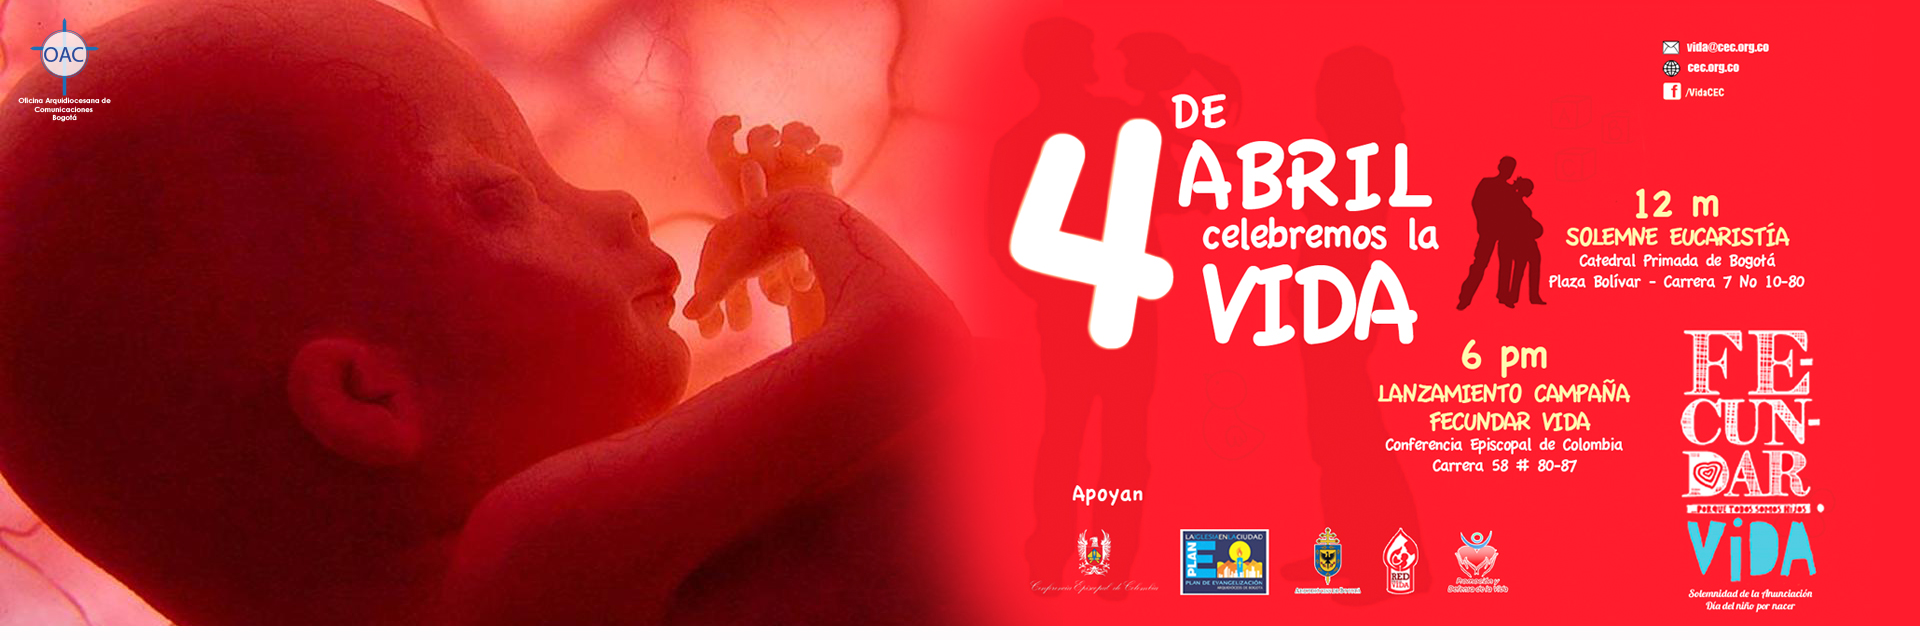 Lanzamiento Campaña: “Fecundar Vida, porque todos somos hijos”